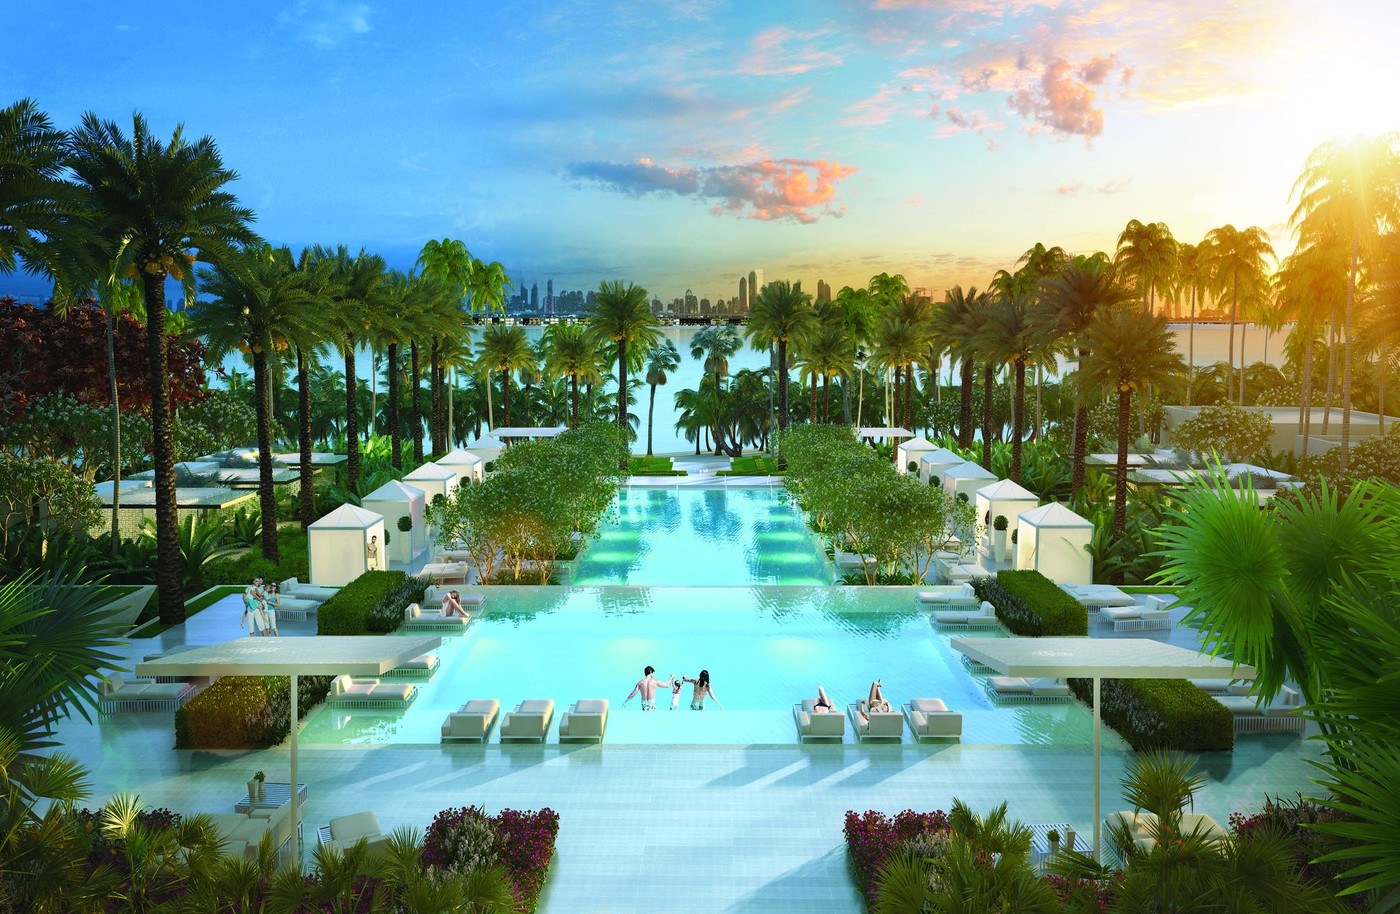 imagen 7 de The Royal Atlantis Resort & Residences, un nuevo edificio de lujo y escándalo en Dubai.